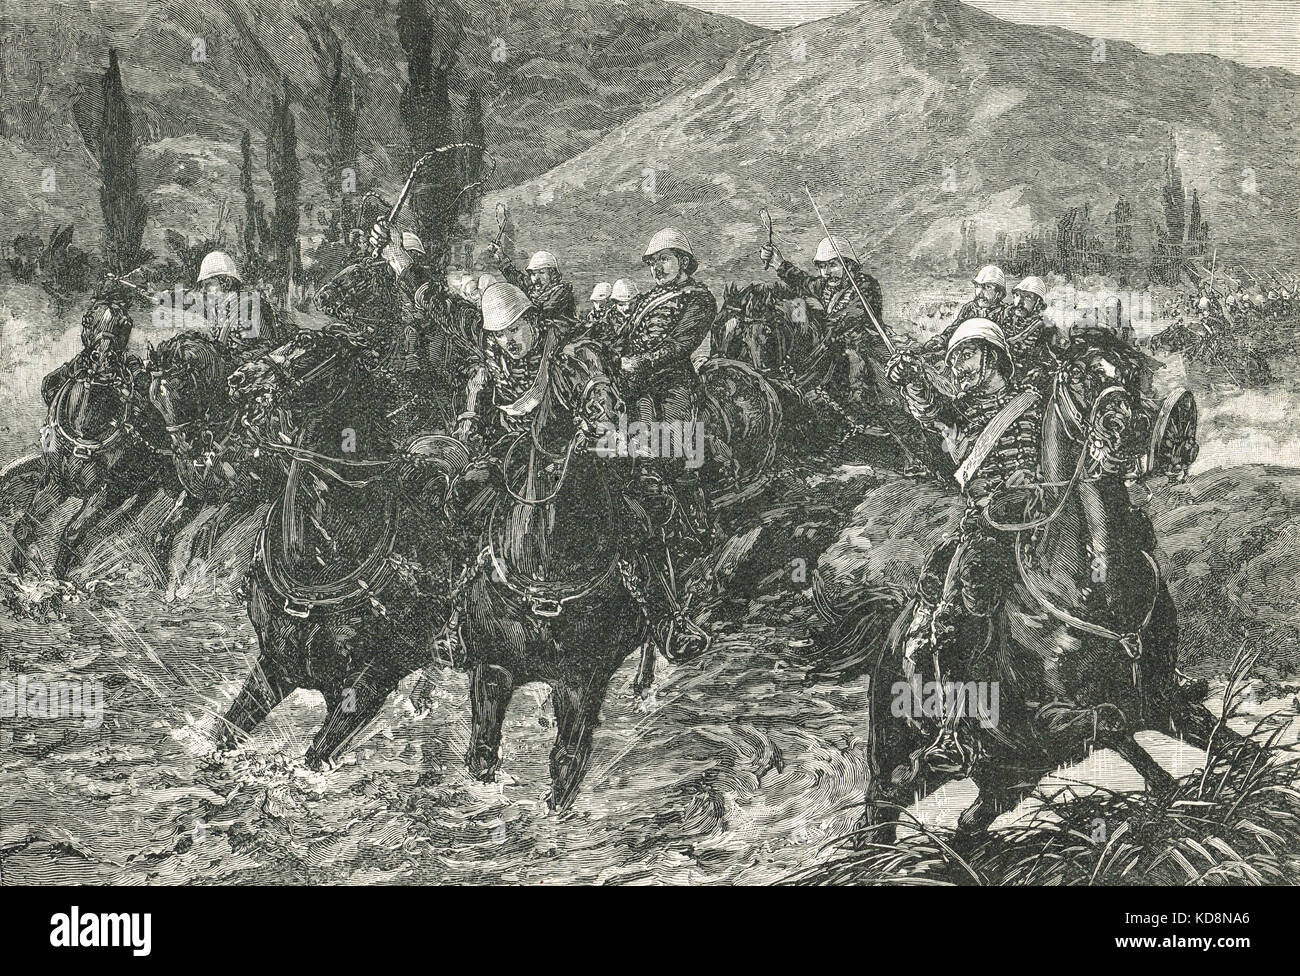 Royal Horse Artillery im Chardeh Valley, um die Geschütze in der Schlacht von Kabul im Dezember 1879 im Zweiten Afghanischen Krieg zu retten Stockfoto